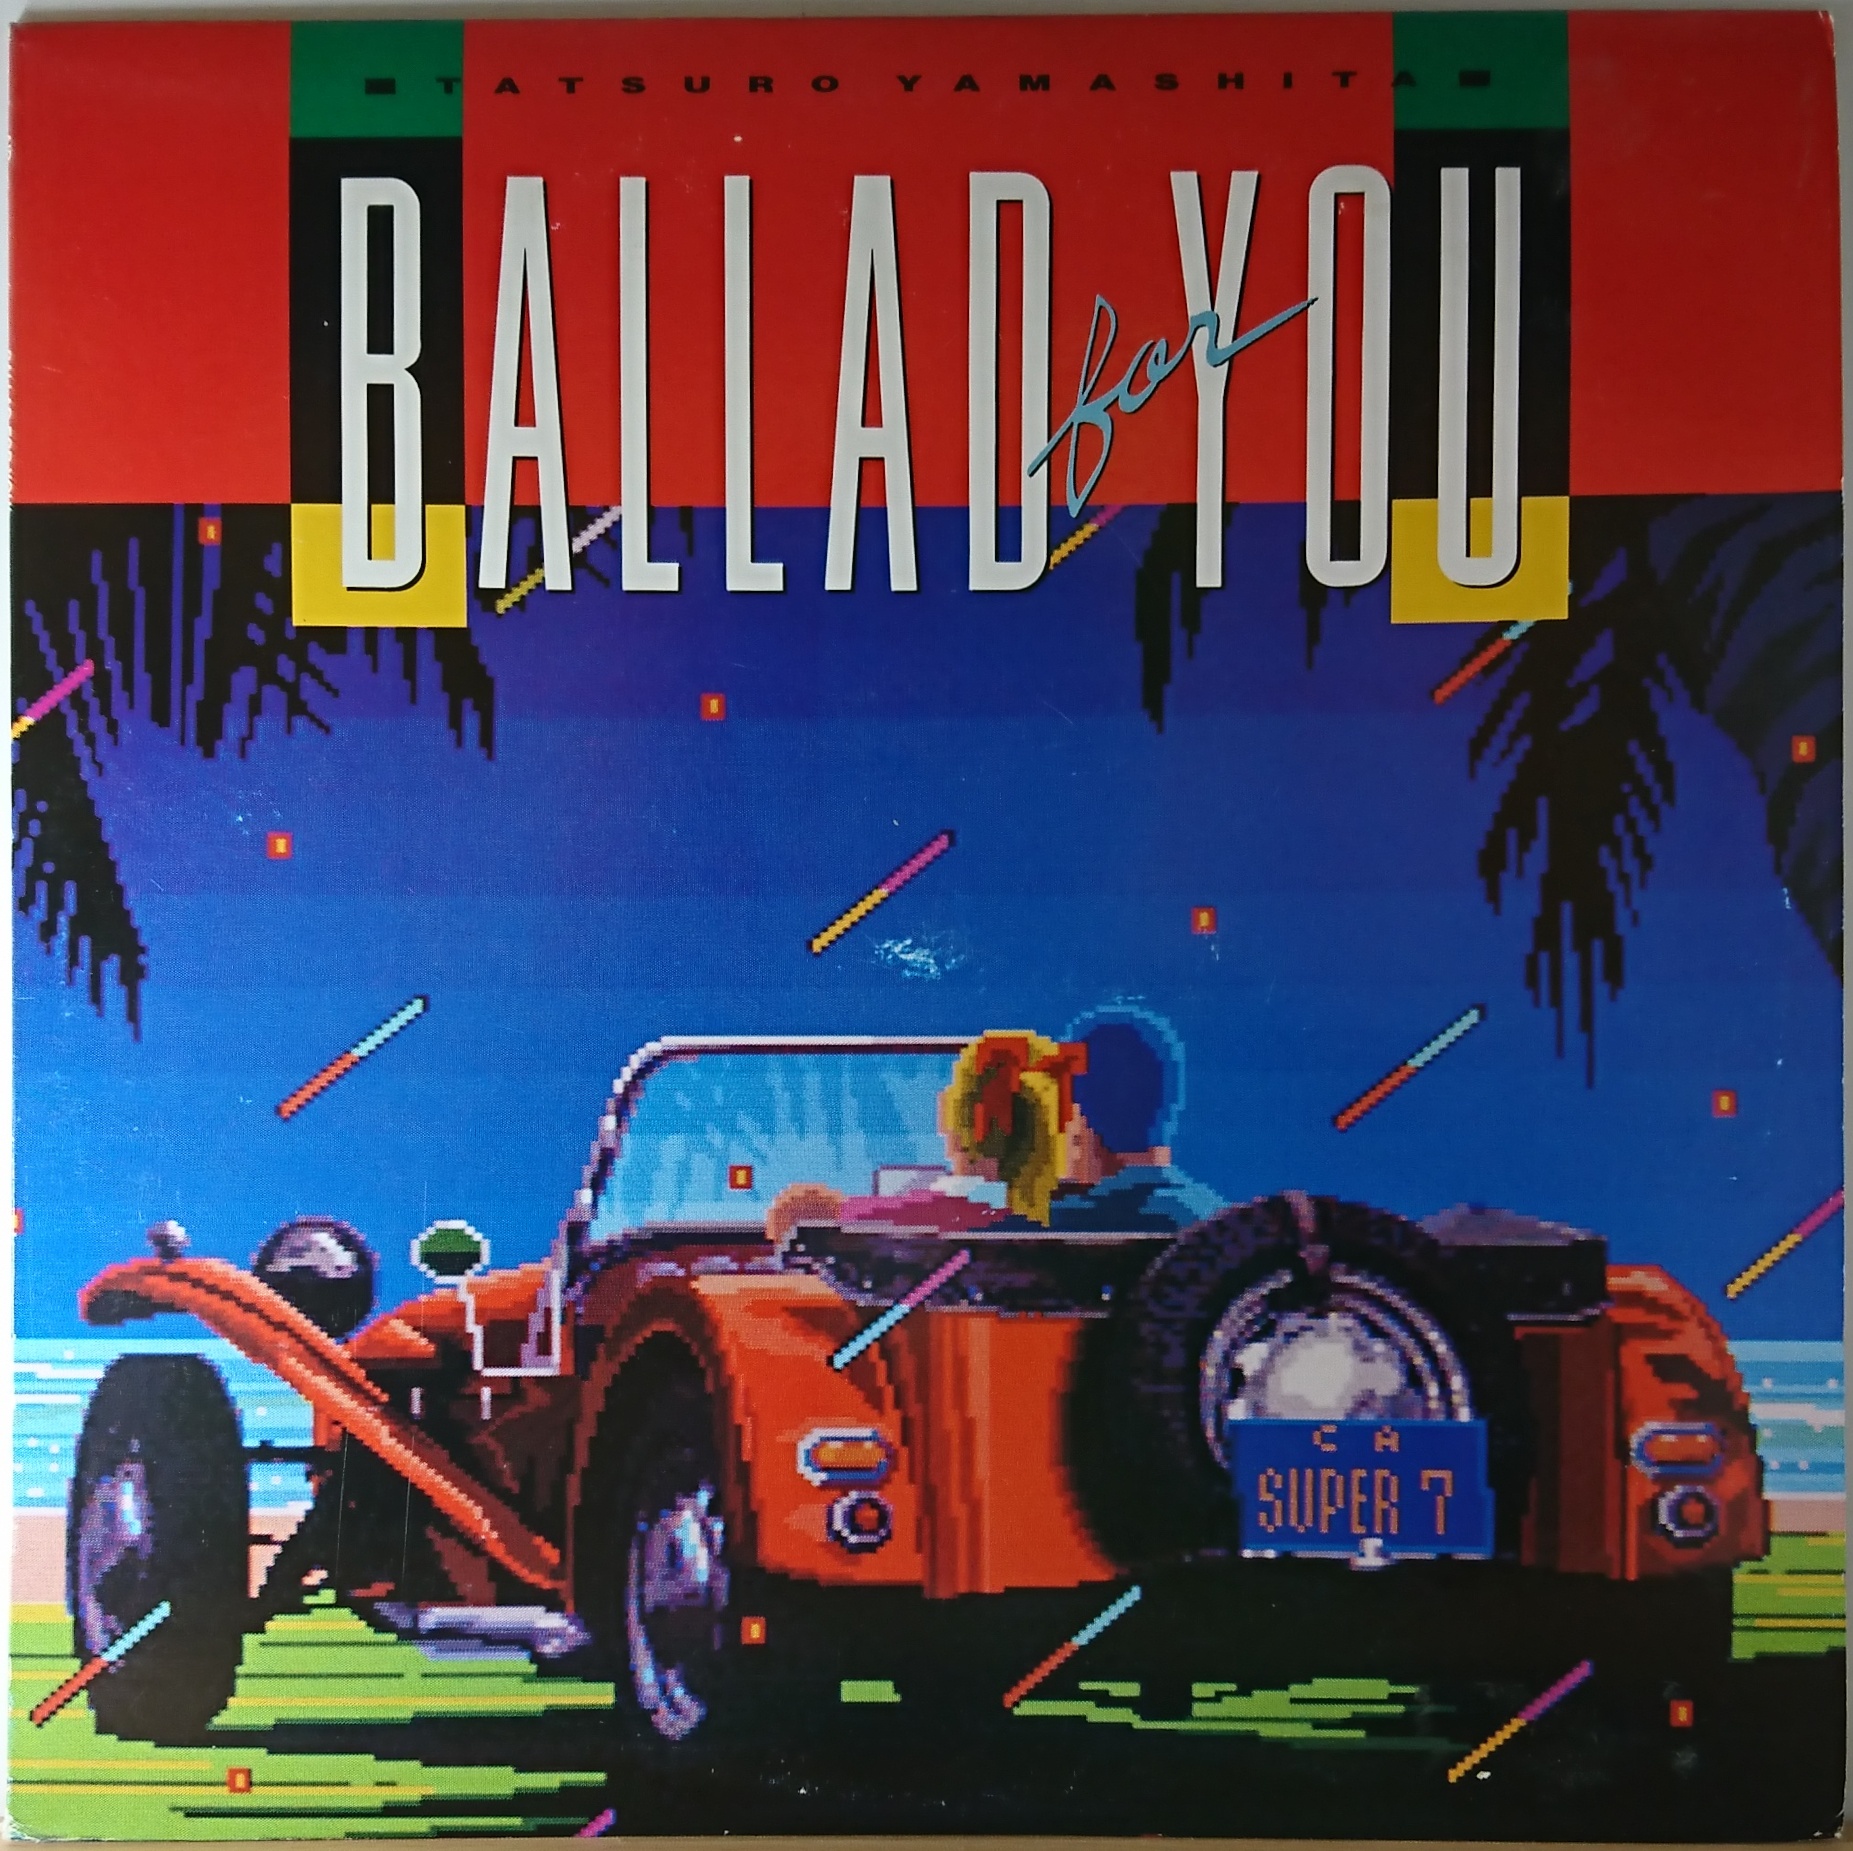 山下達郎 - Ballad For You | 中古レコード通販・買取のアカル・レコーズ